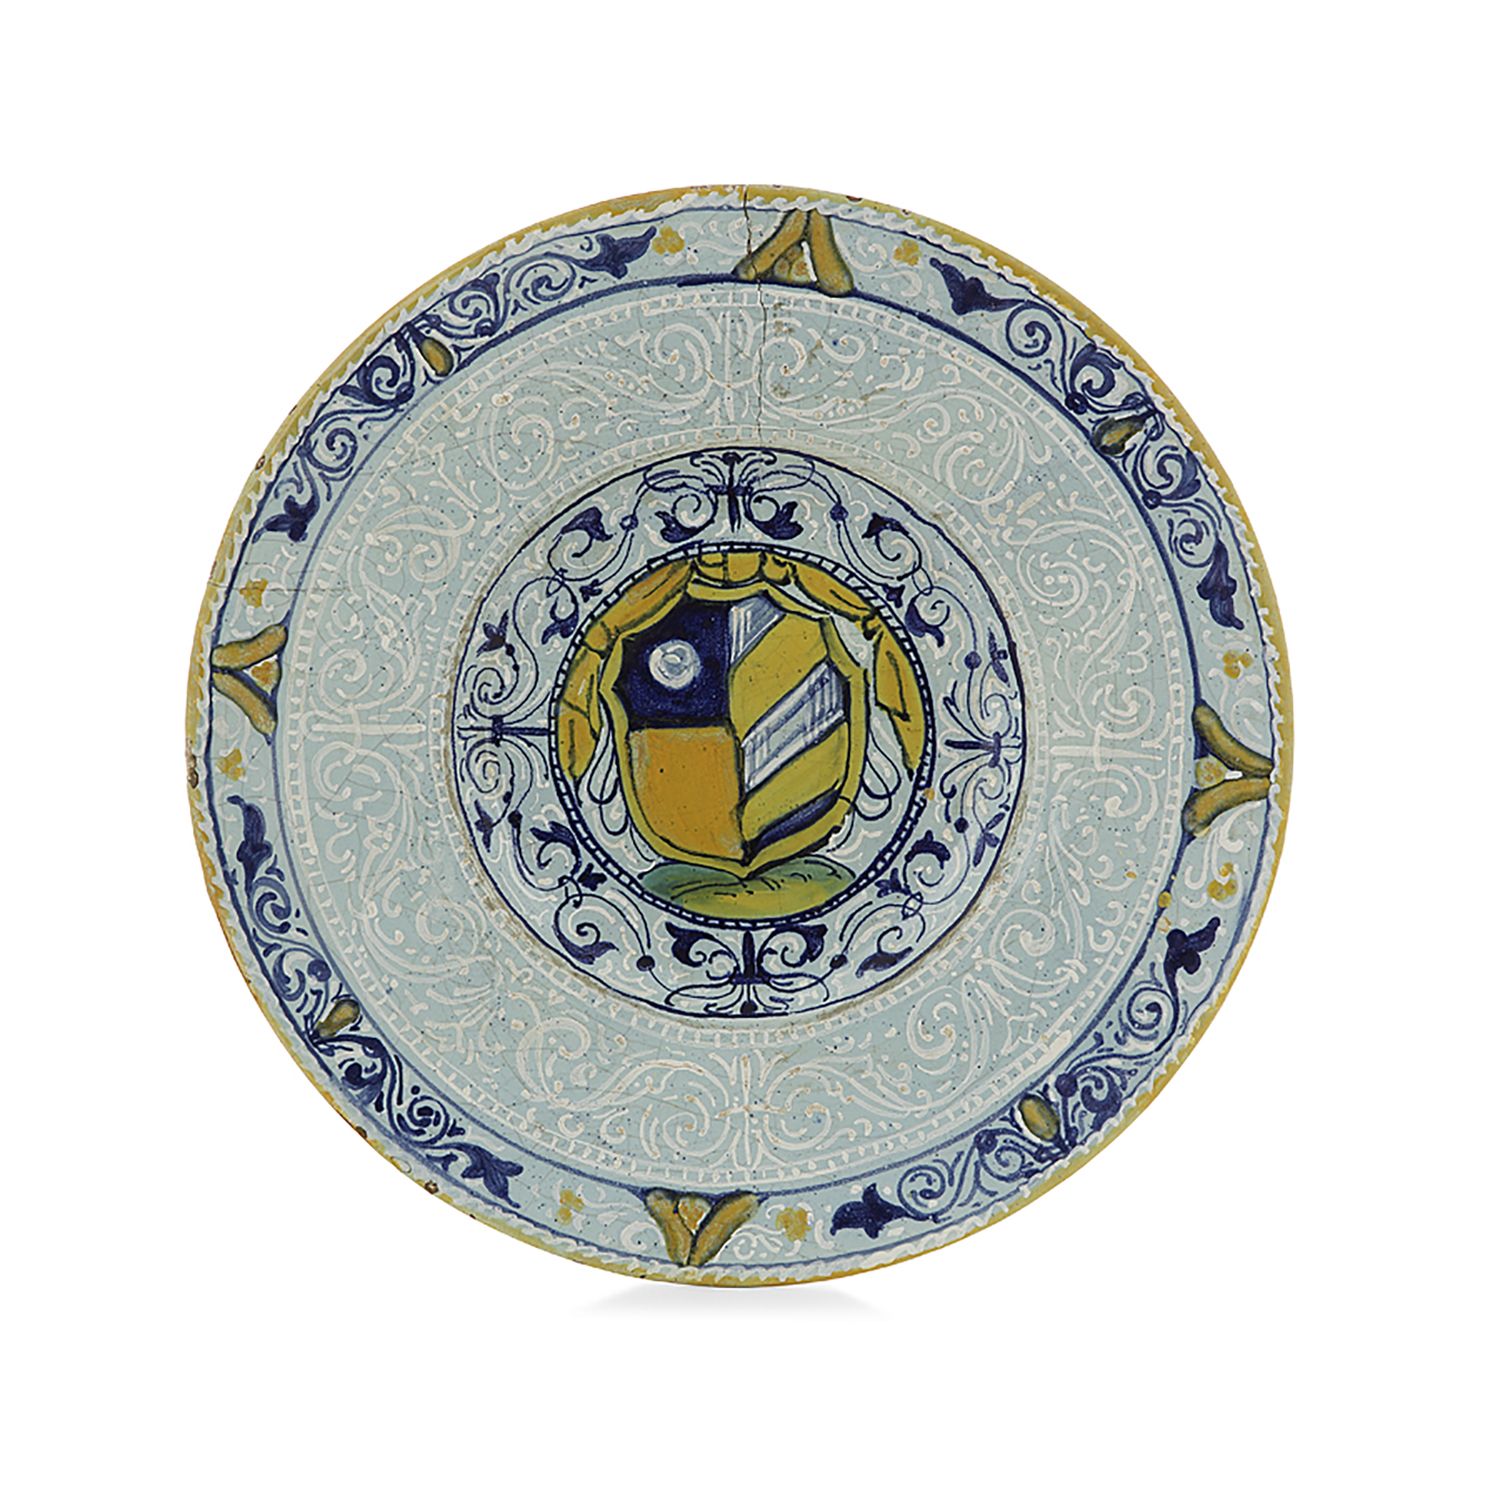 Null pequeño plato redondo, italia, estilo siglo xvi

en mayólica con decoración&hellip;